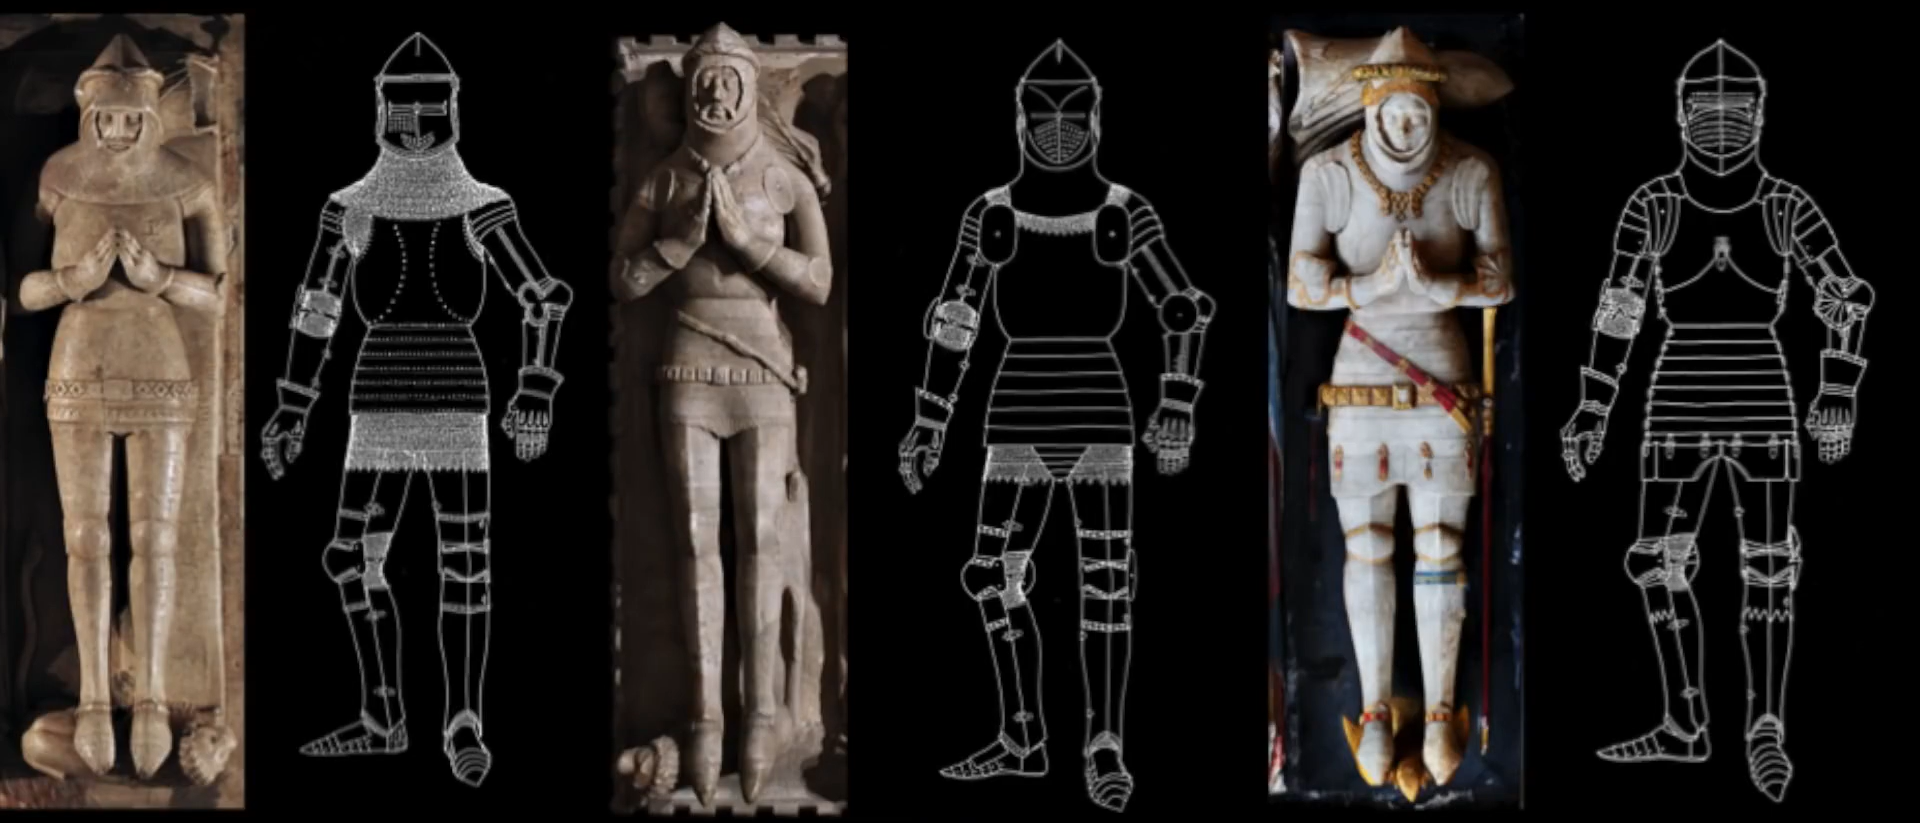 15世纪英国雕塑的演变中可以看到甲胄结构的变化，锁甲部分越来越少，板甲组件越来越完善